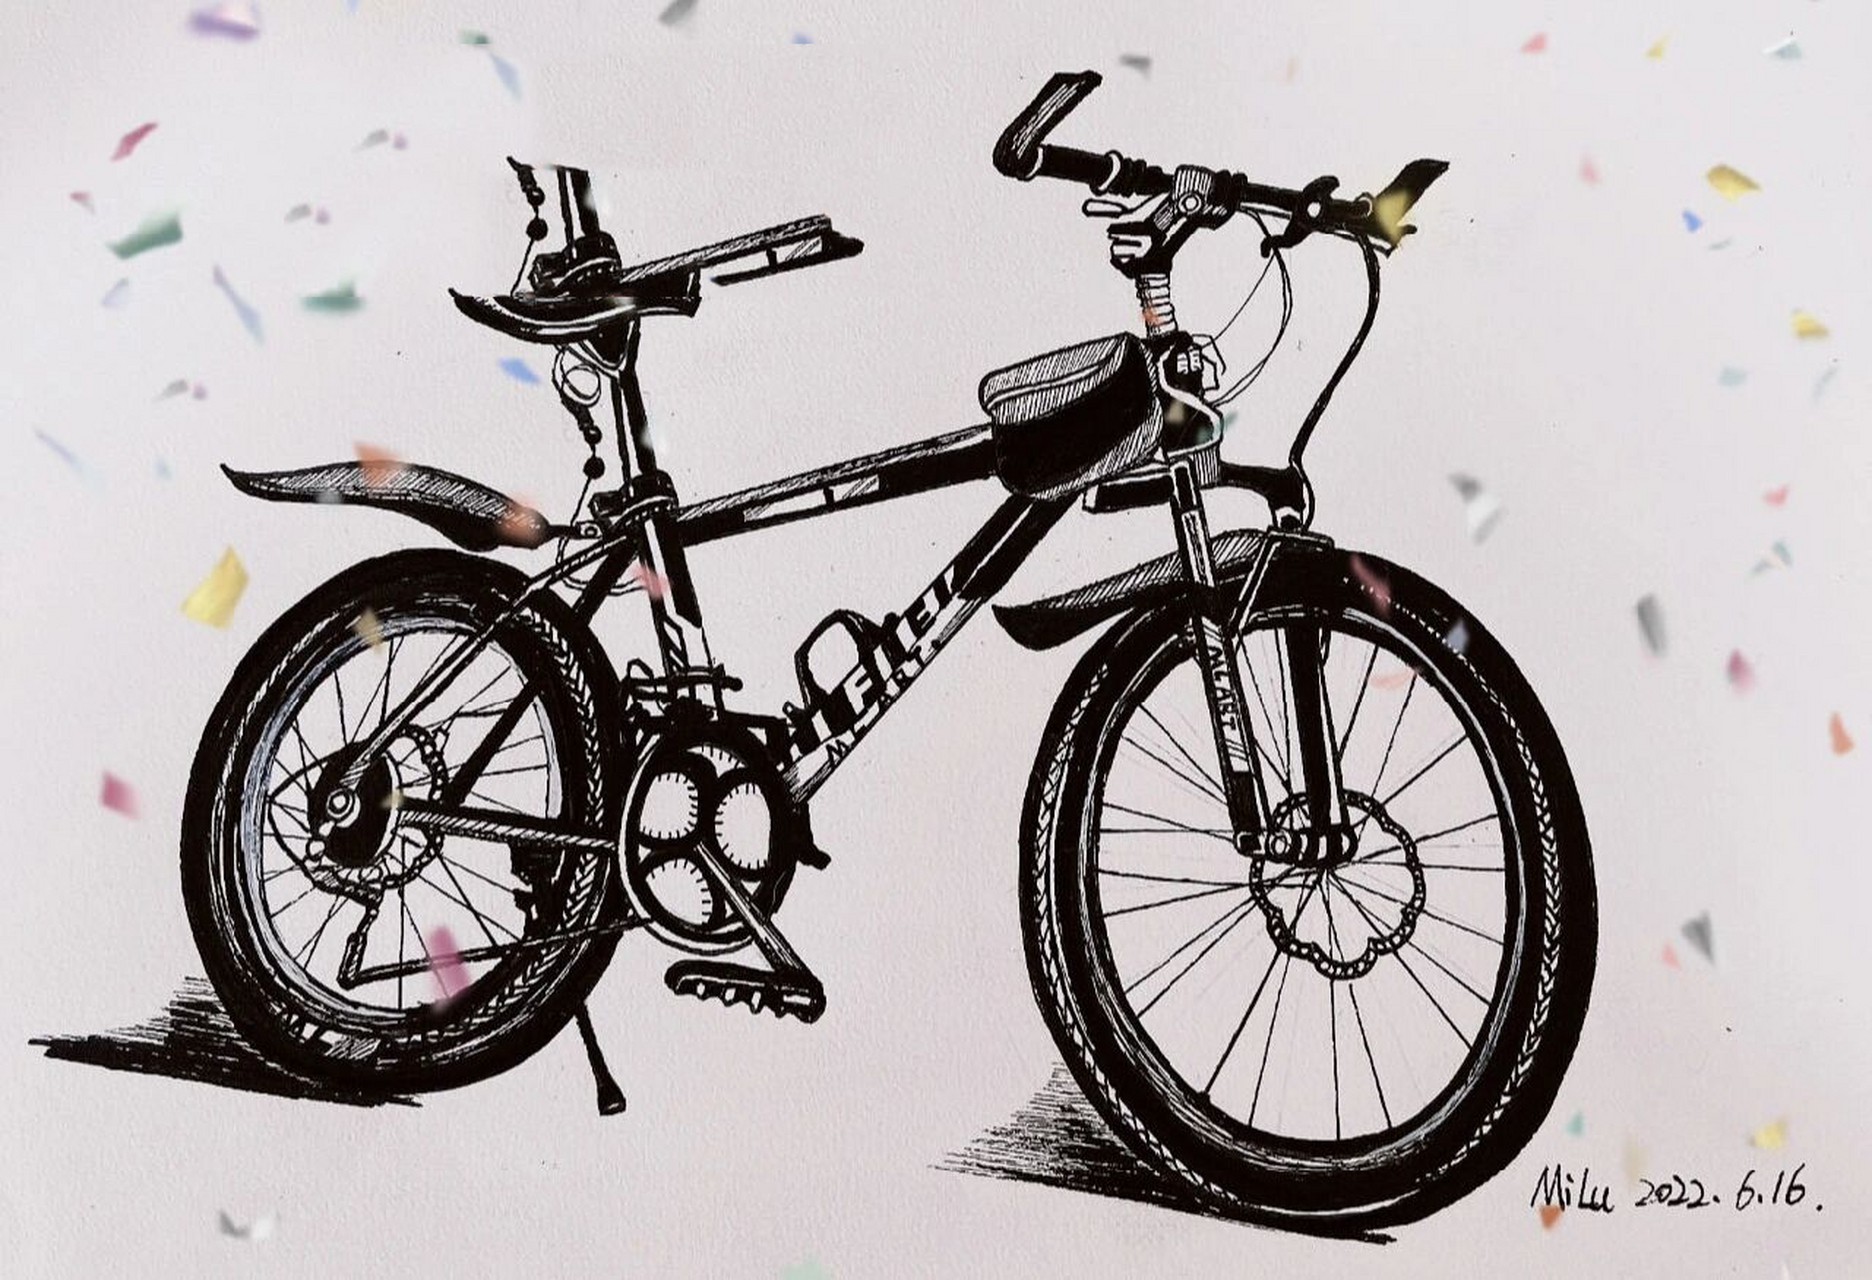 自行车画法难度美术图片